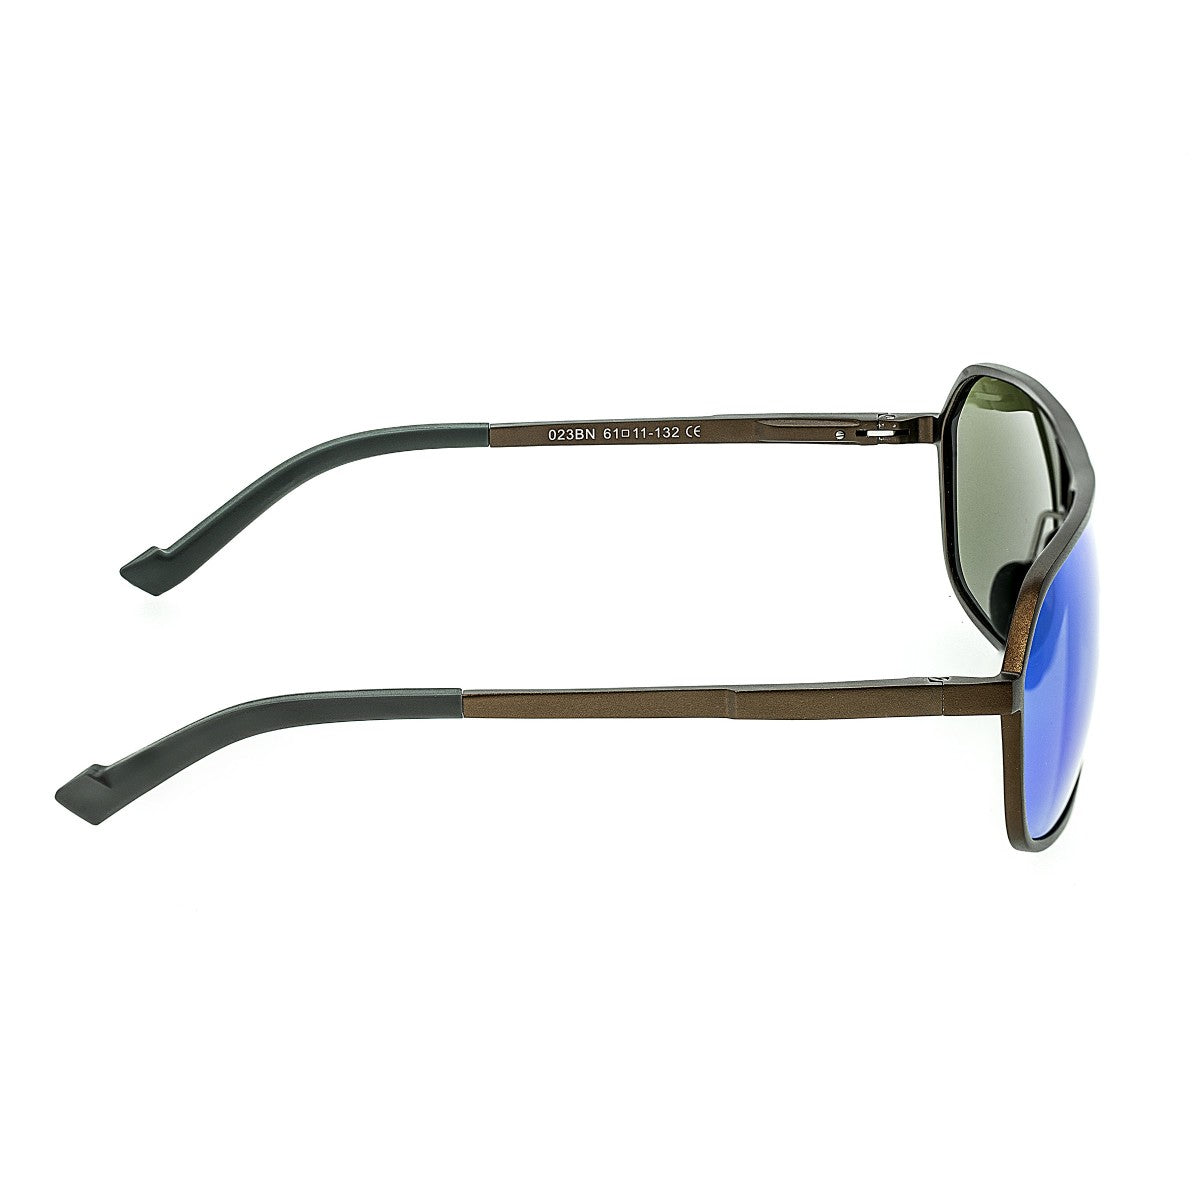 Breed Fornax Aluminium Polarized Sunglasses - Brown/Blue-Green - BSG023BN